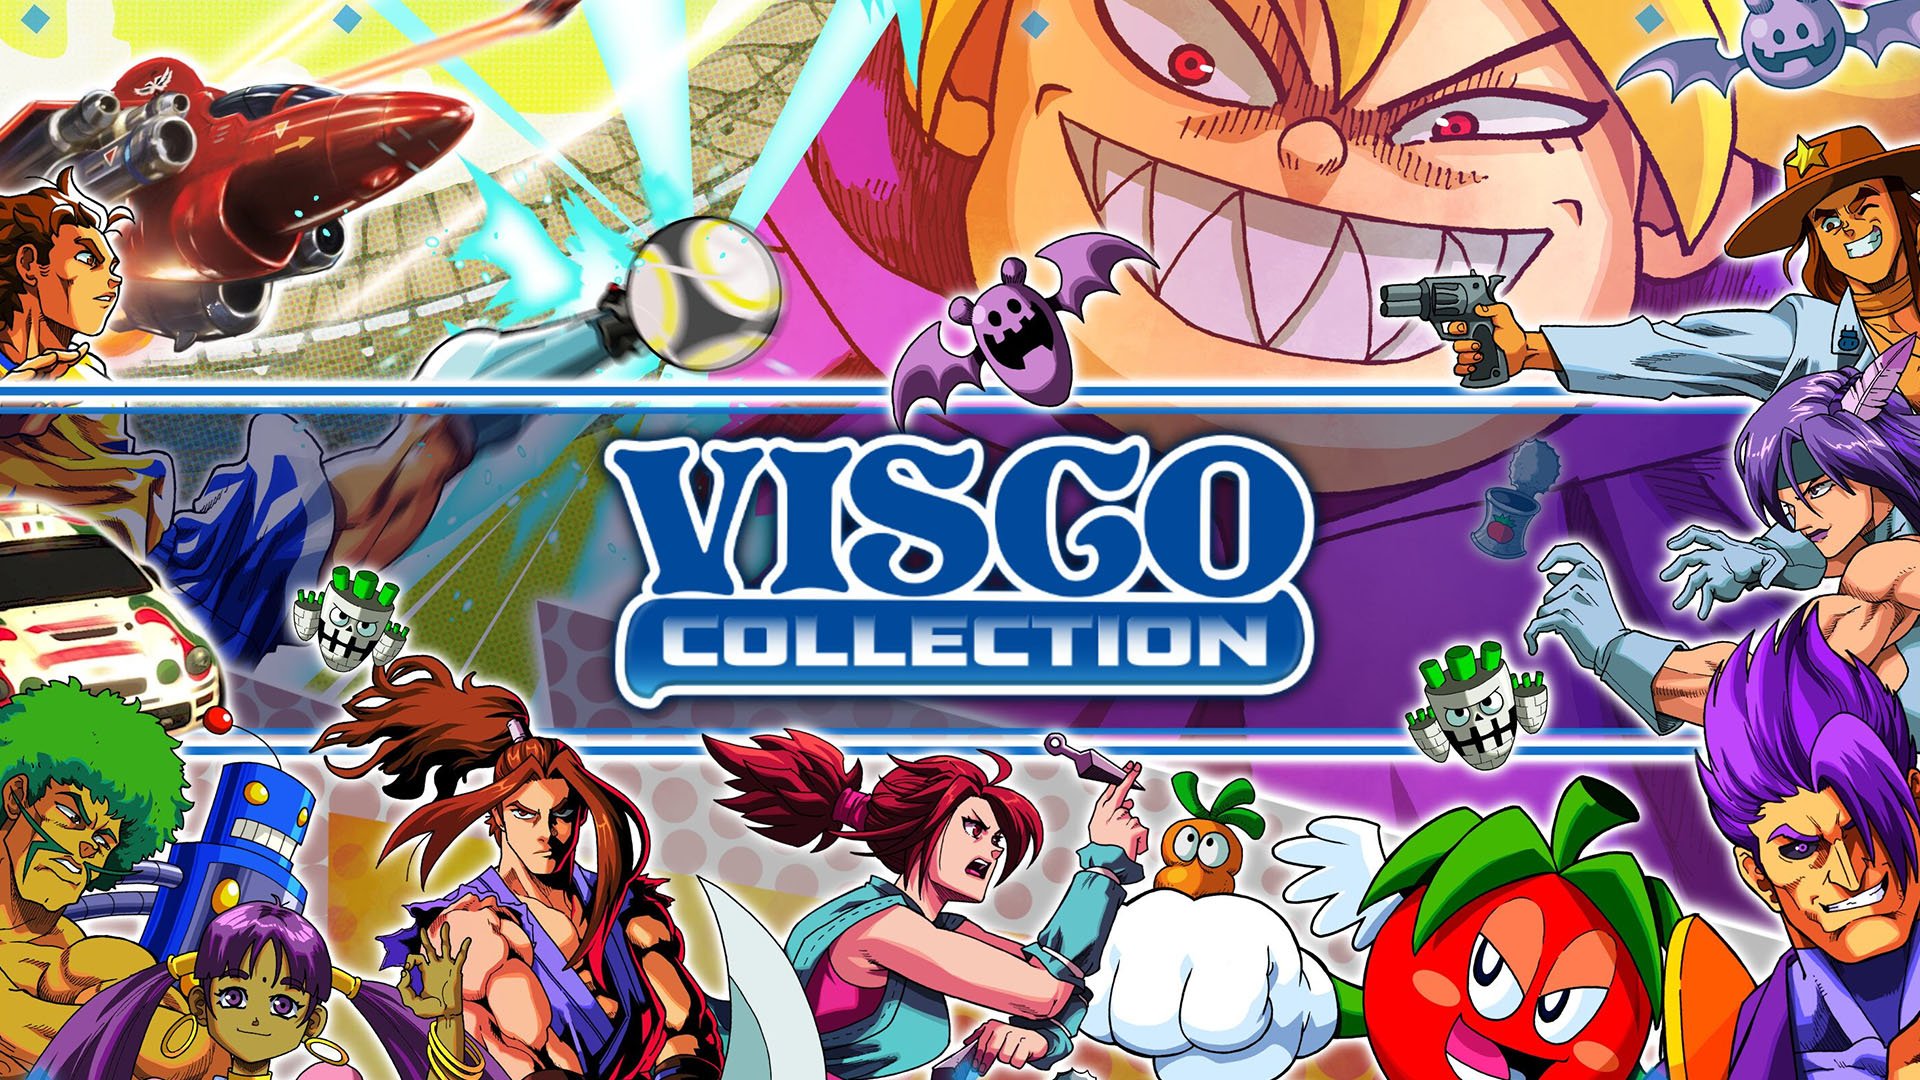 VISCO Mini Arcade Bartop - JUST FOR GAMES